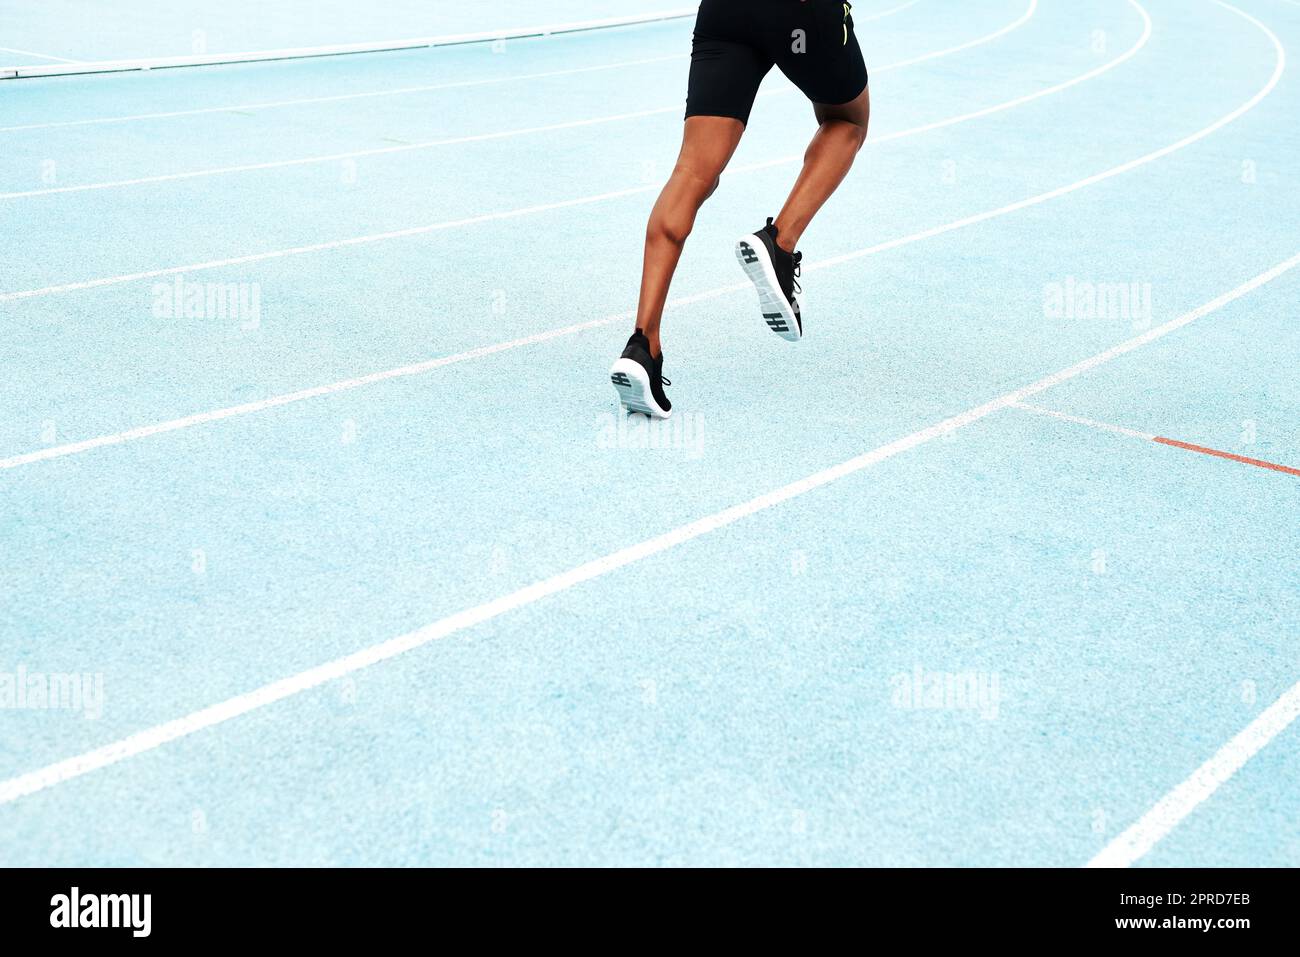 Costruisco la mia forza per la gara. Un atleta irriconoscibile che corre solo lungo un campo di pista durante una sessione di allenamento all'aperto. Foto Stock